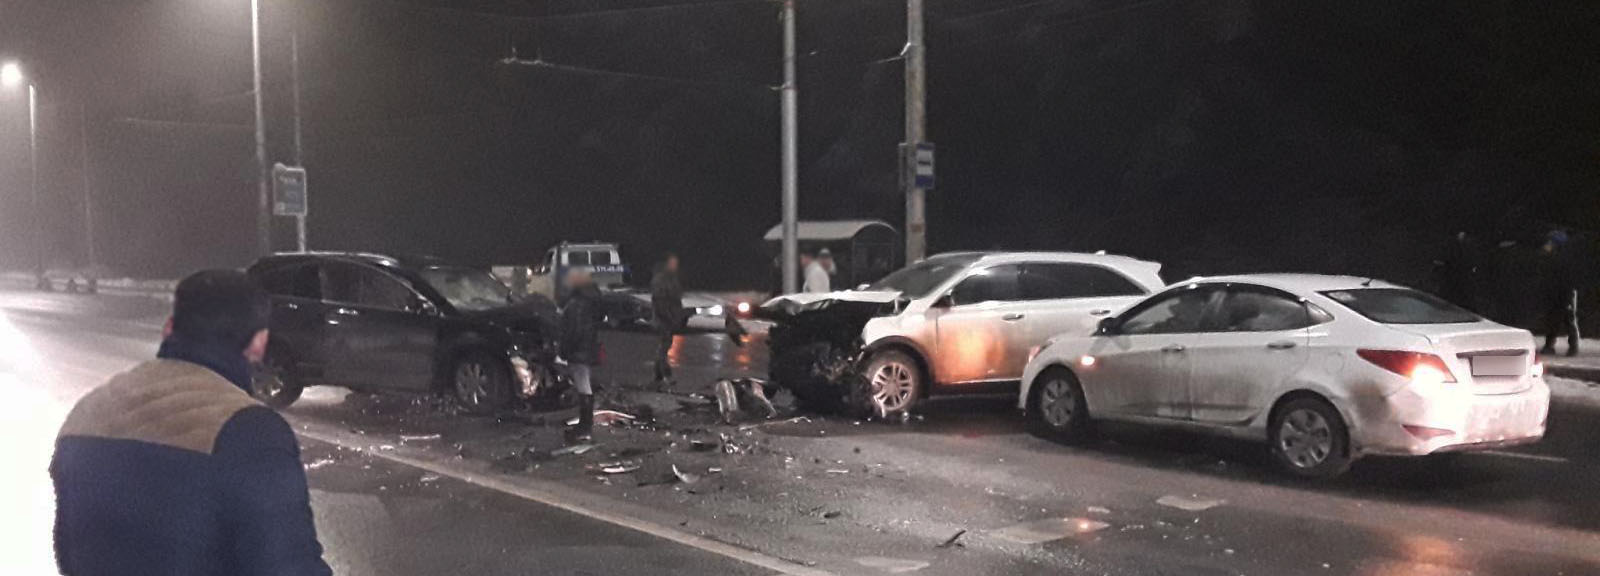 На Кохомском шоссе в Иванове столкнулись три машины